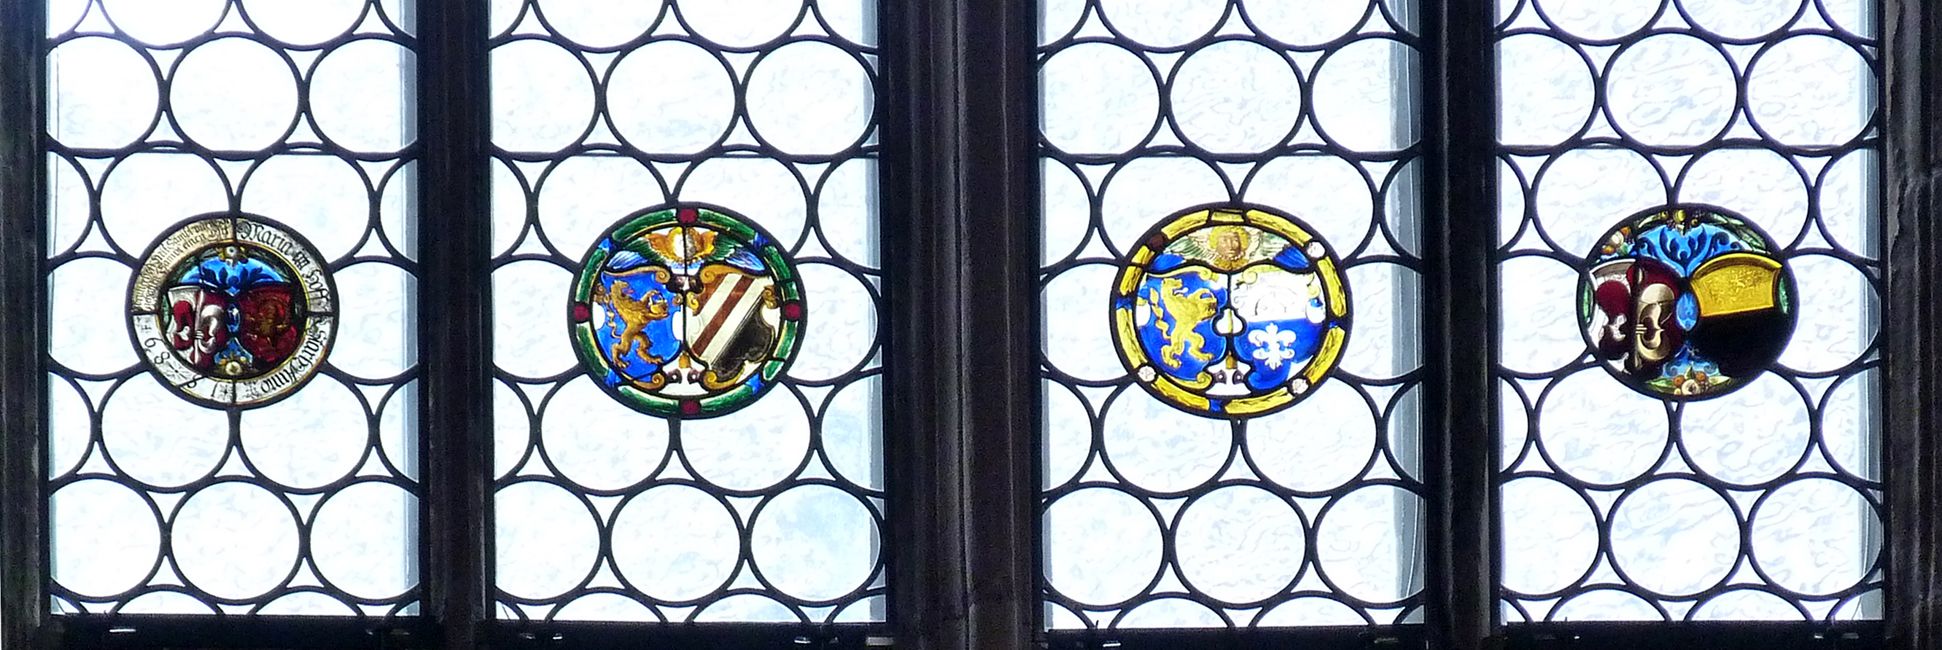 Bamberger Fenster fünfte Fensterzeile von unten, Wappenschilder